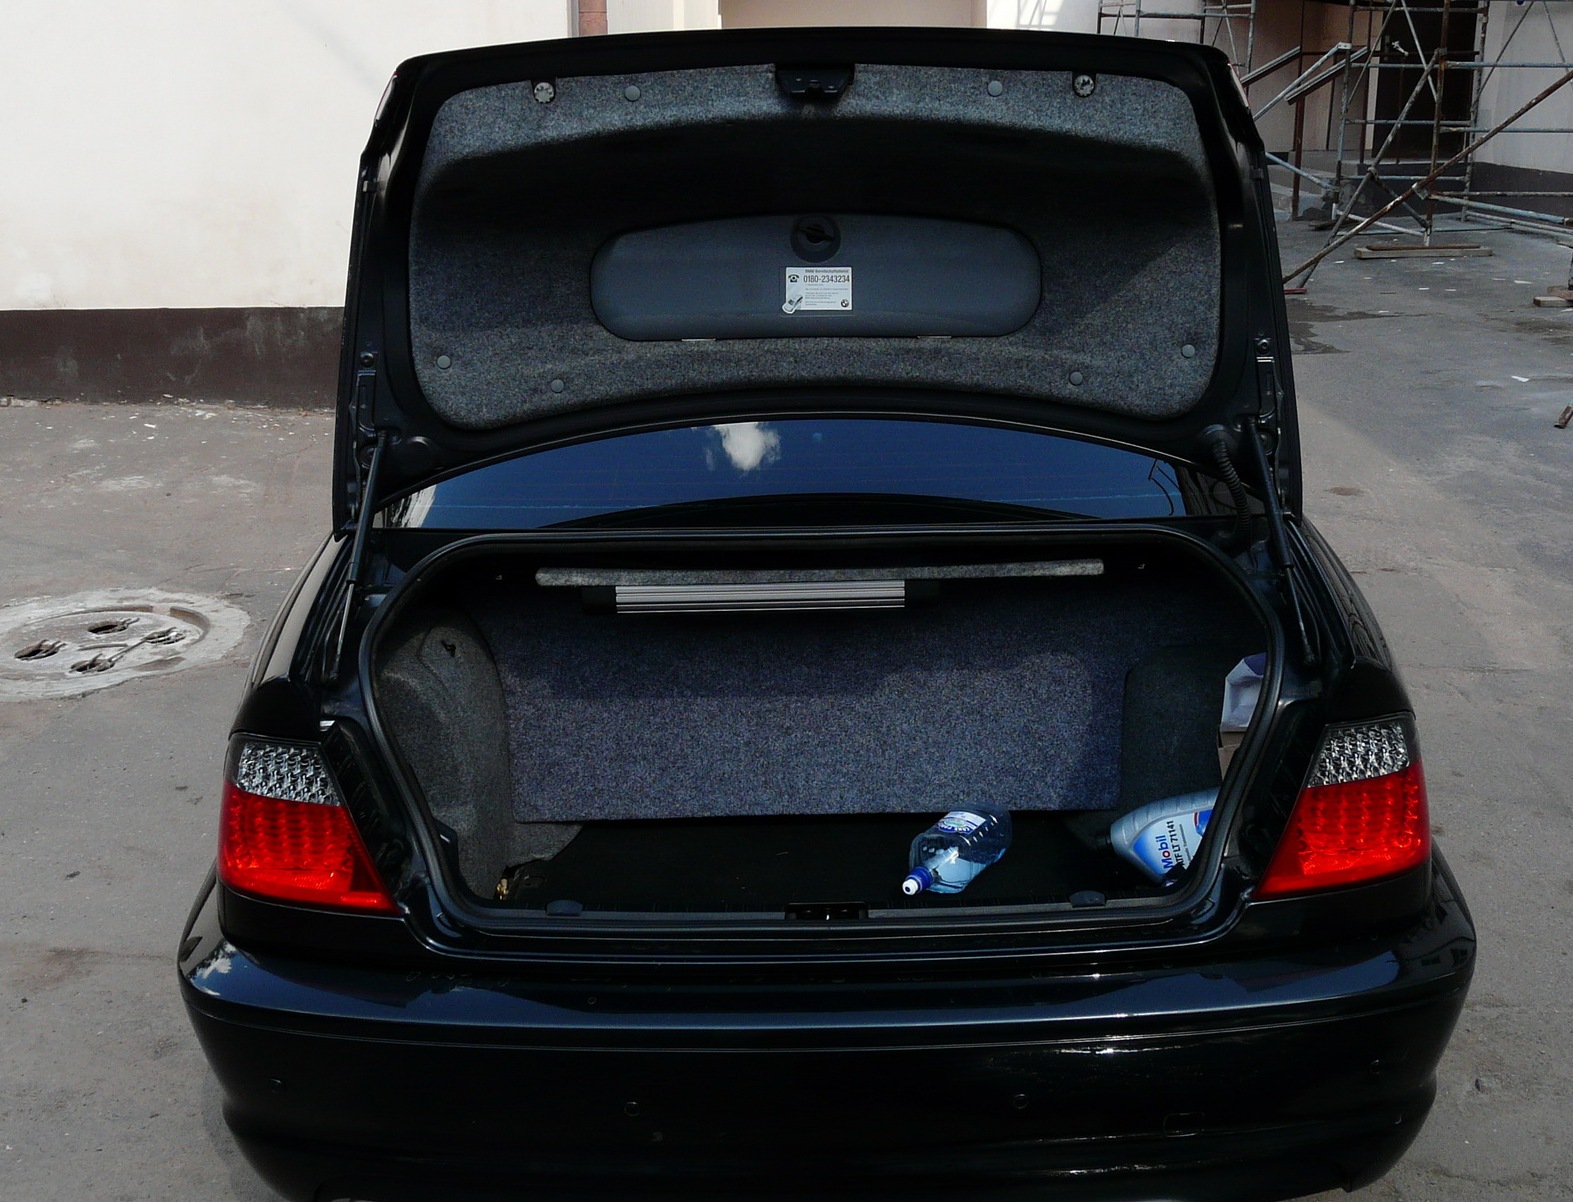 БМВ без багажника. Инструменты в крышке багажника БМВ. BMW 1 Series инструменты в багажнике. БМВ С деньгами в багажнике.